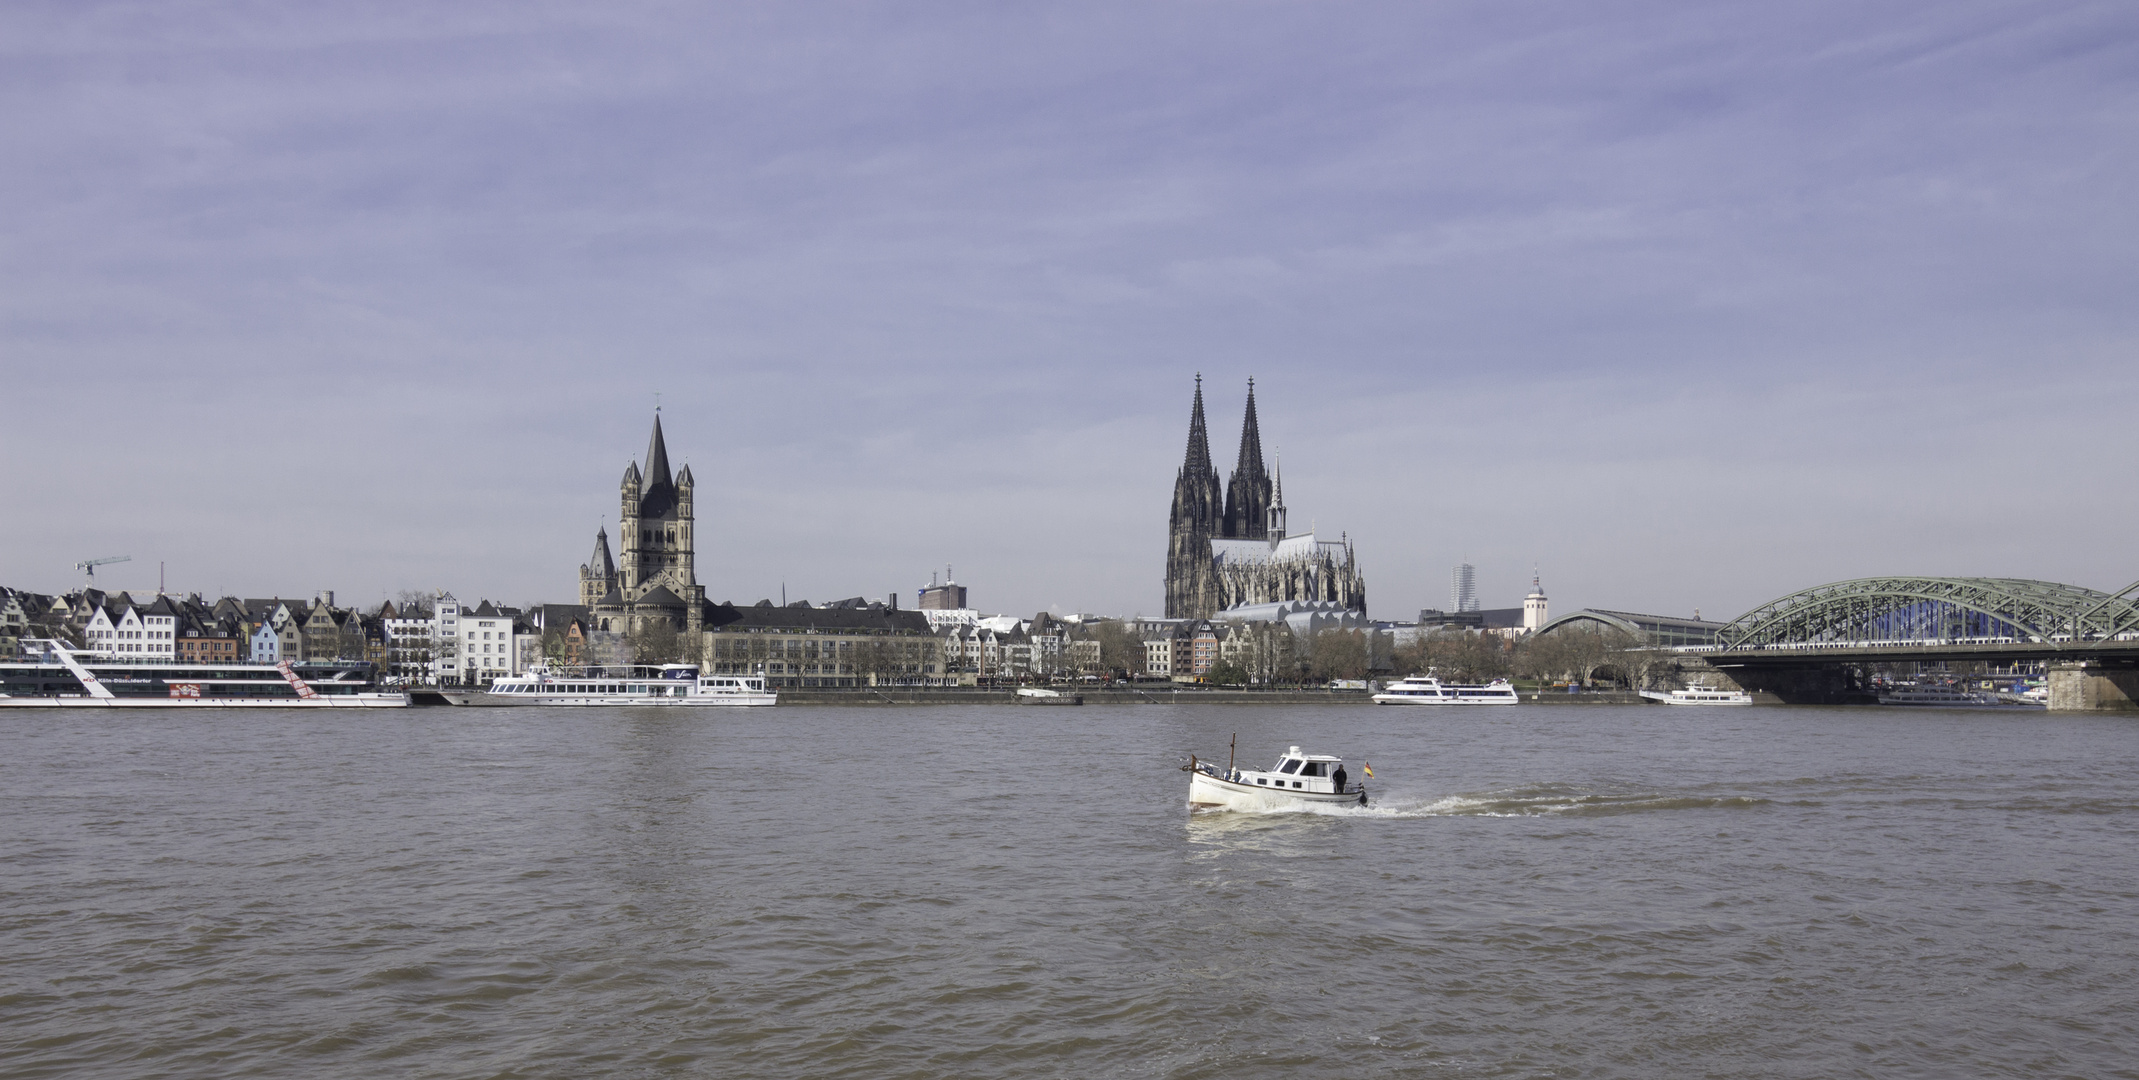 Schnelle Boot auf der Rheine 